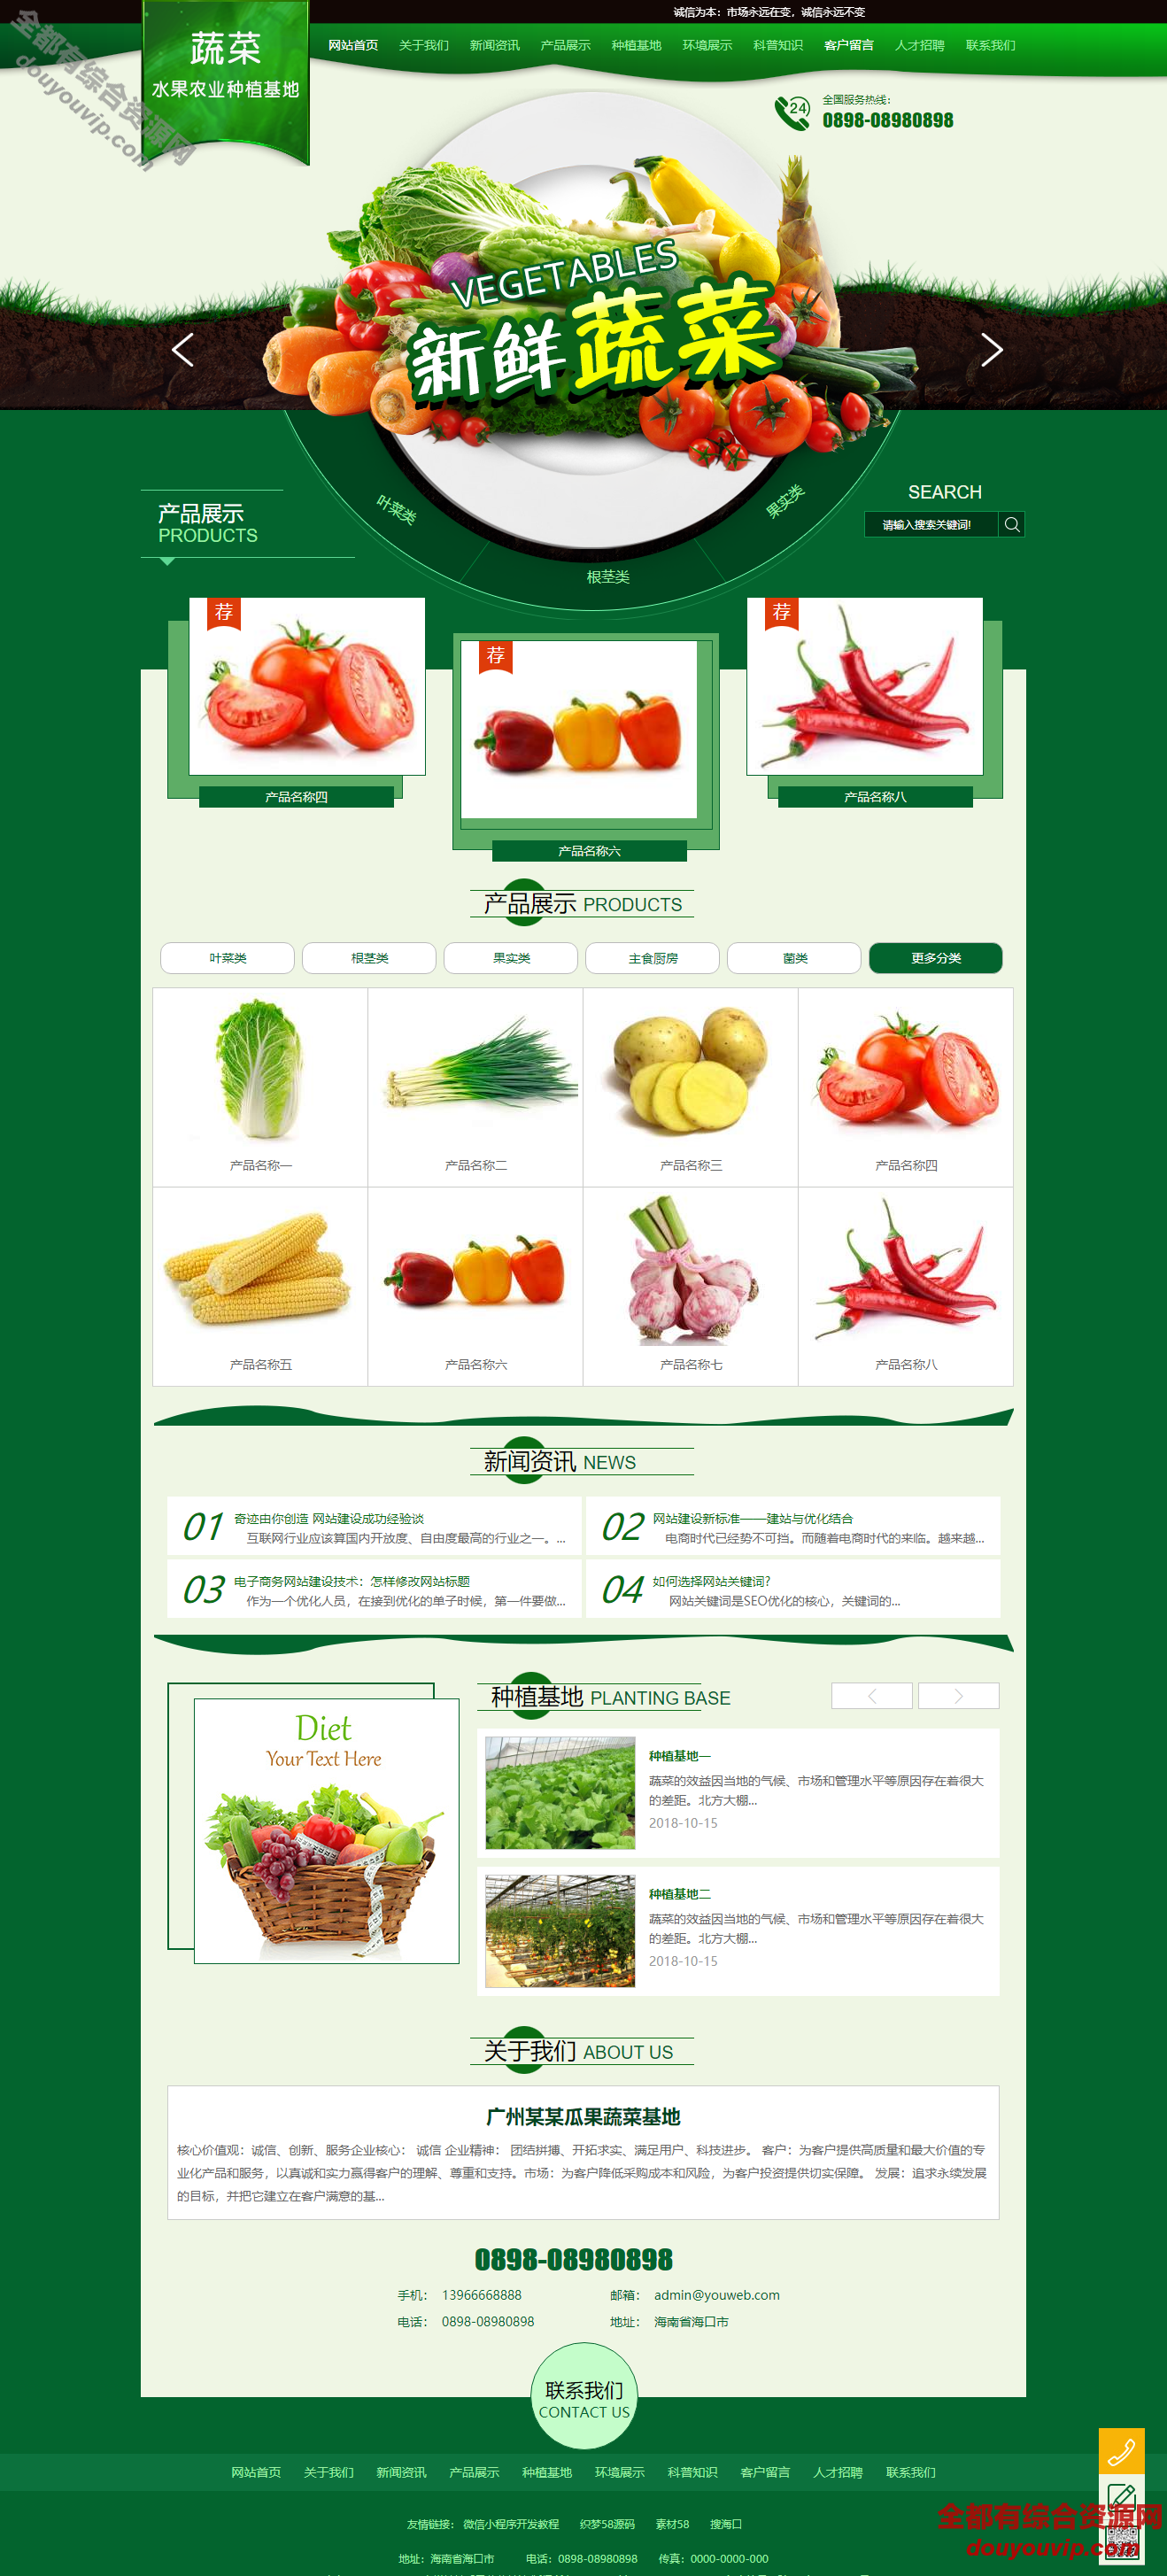 易优cms农业种植基地水果蔬菜网站模板源码-带背景带手机端1409 作者:逐日更新 帖子ID:86 手机端,源码